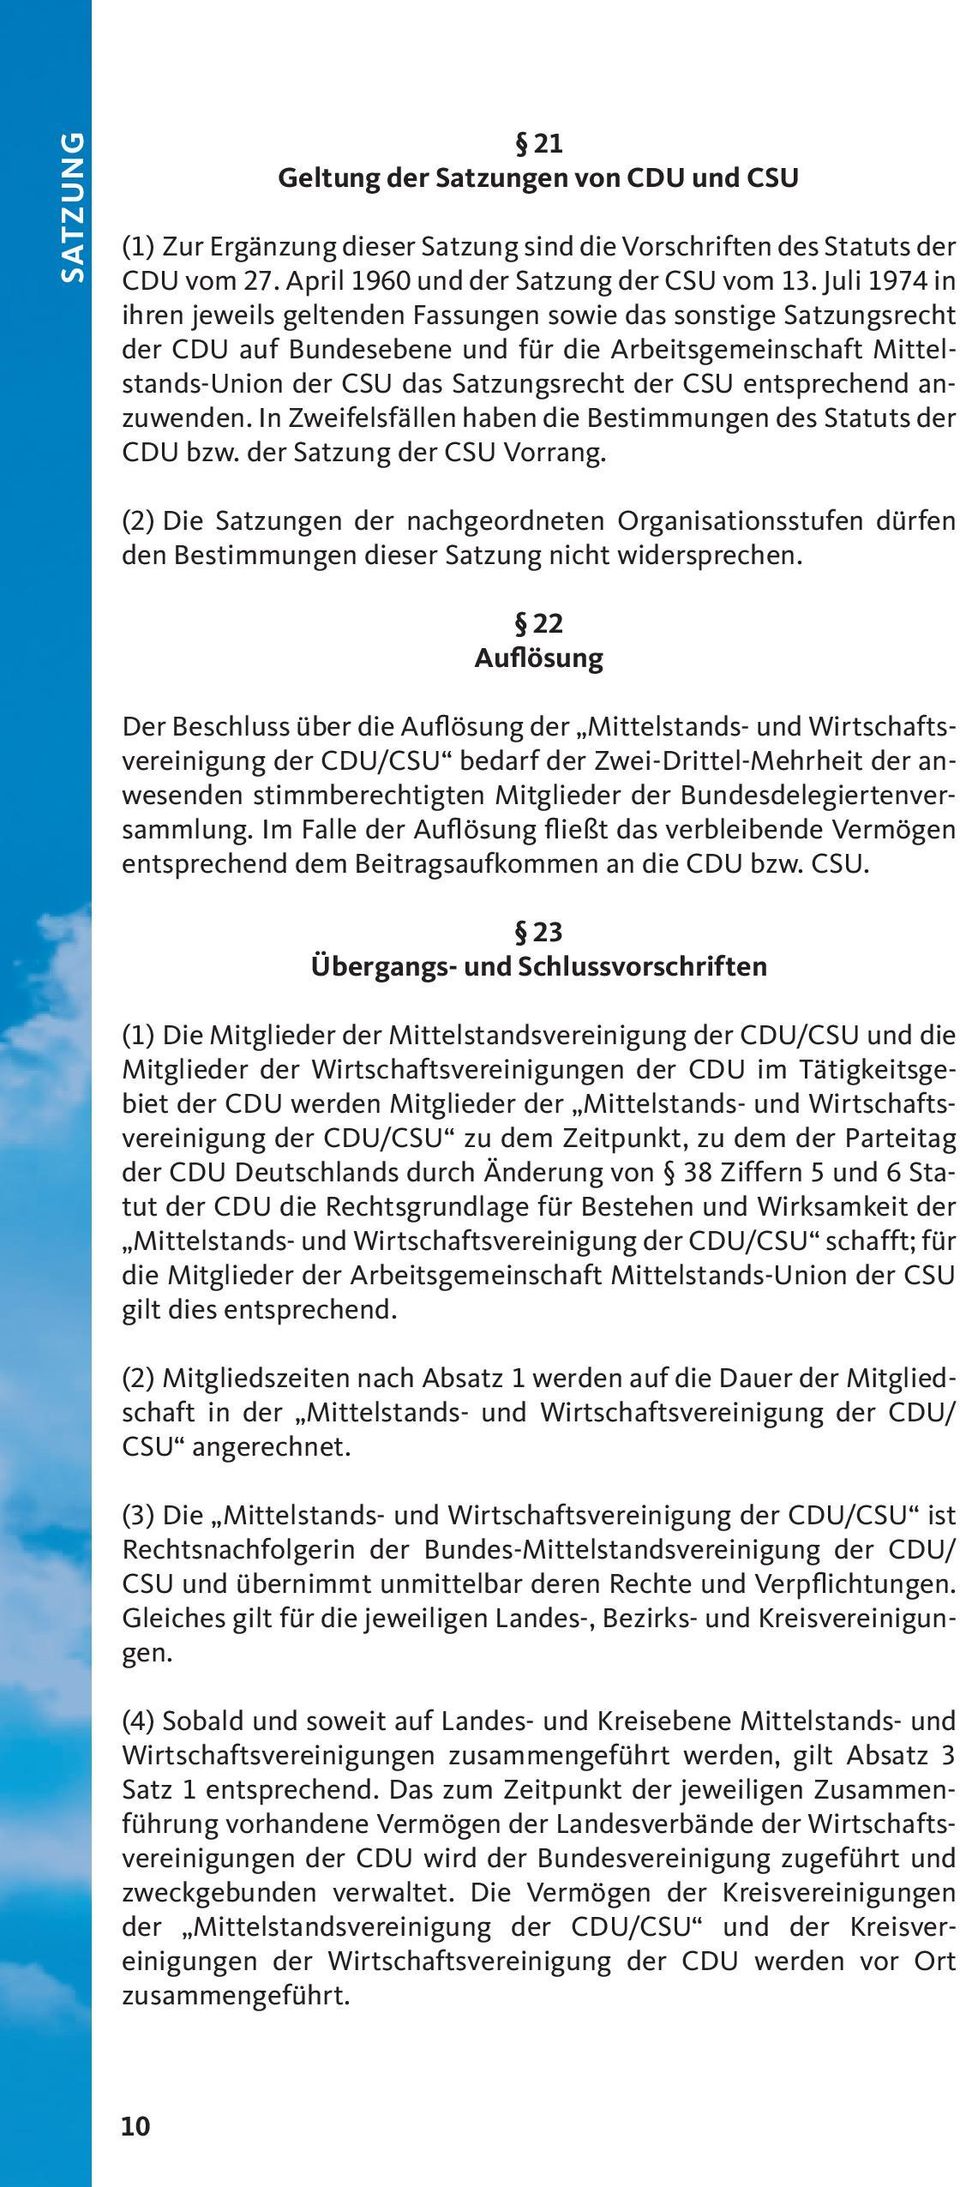 entsprechend anzuwenden. In Zweifelsfällen haben die Bestimmungen des Statuts der CDU bzw. der Satzung der CSU Vorrang.